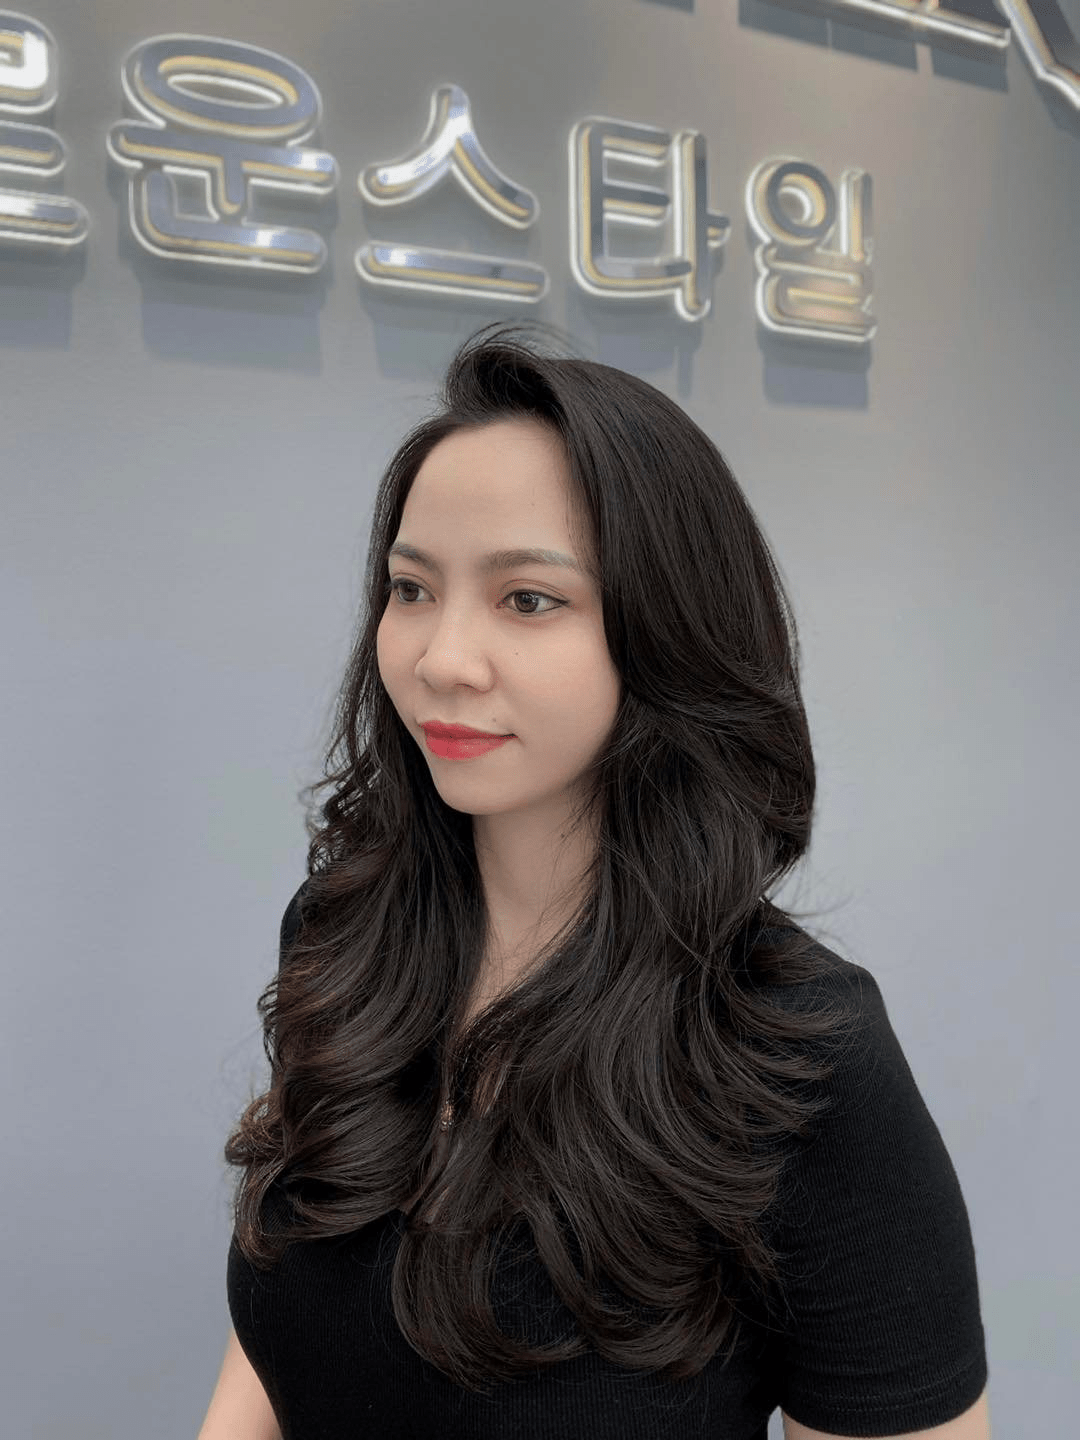 Hair Salon Thanh Tuấn